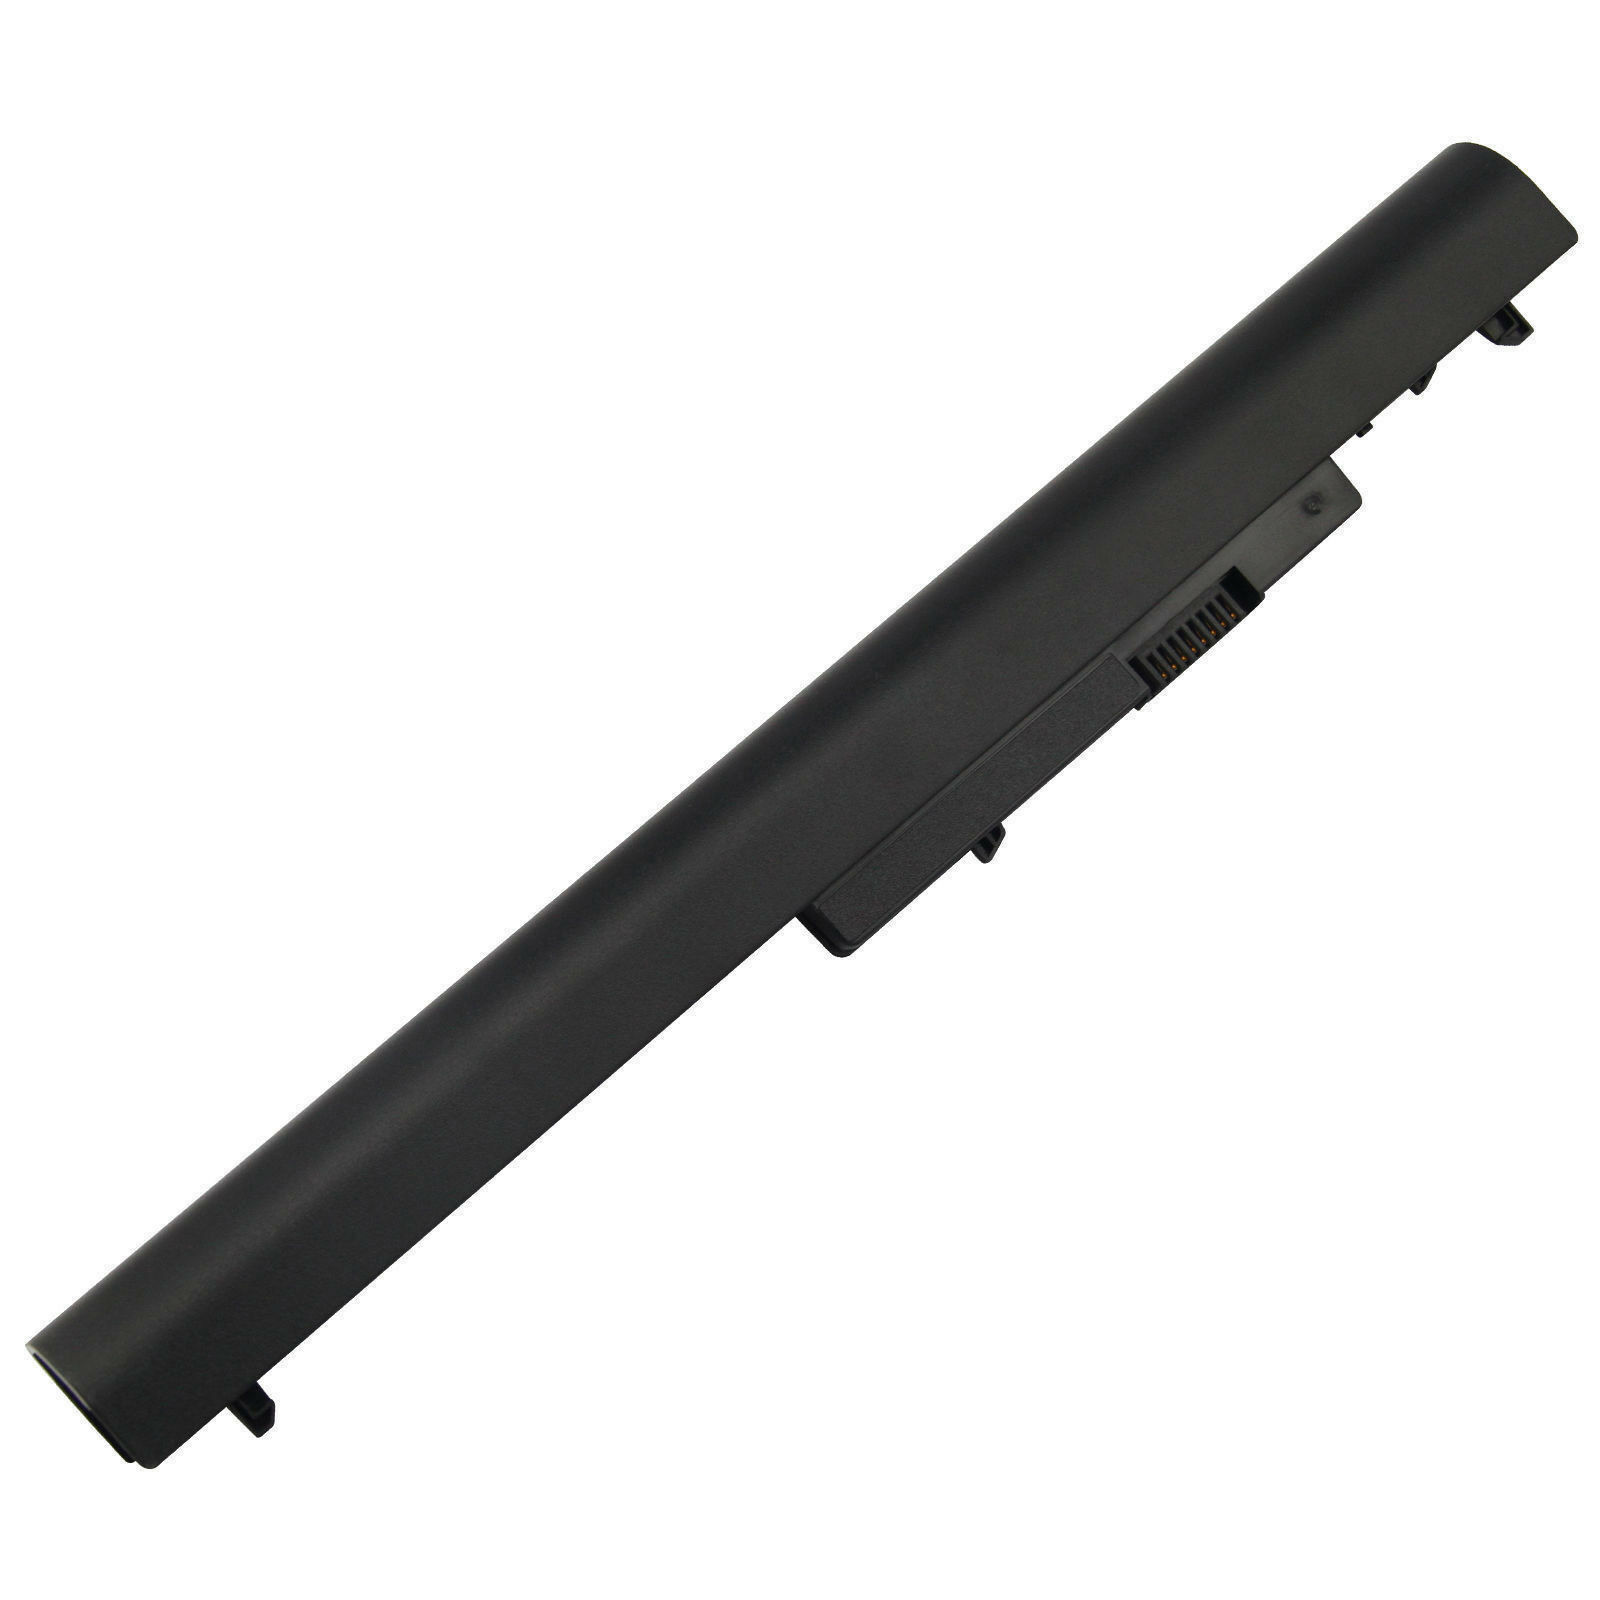 HSTNN-PB5Y 740715-001 OA04 per Hp Compaq 340 [14,4/14,8V Black] compatible battery